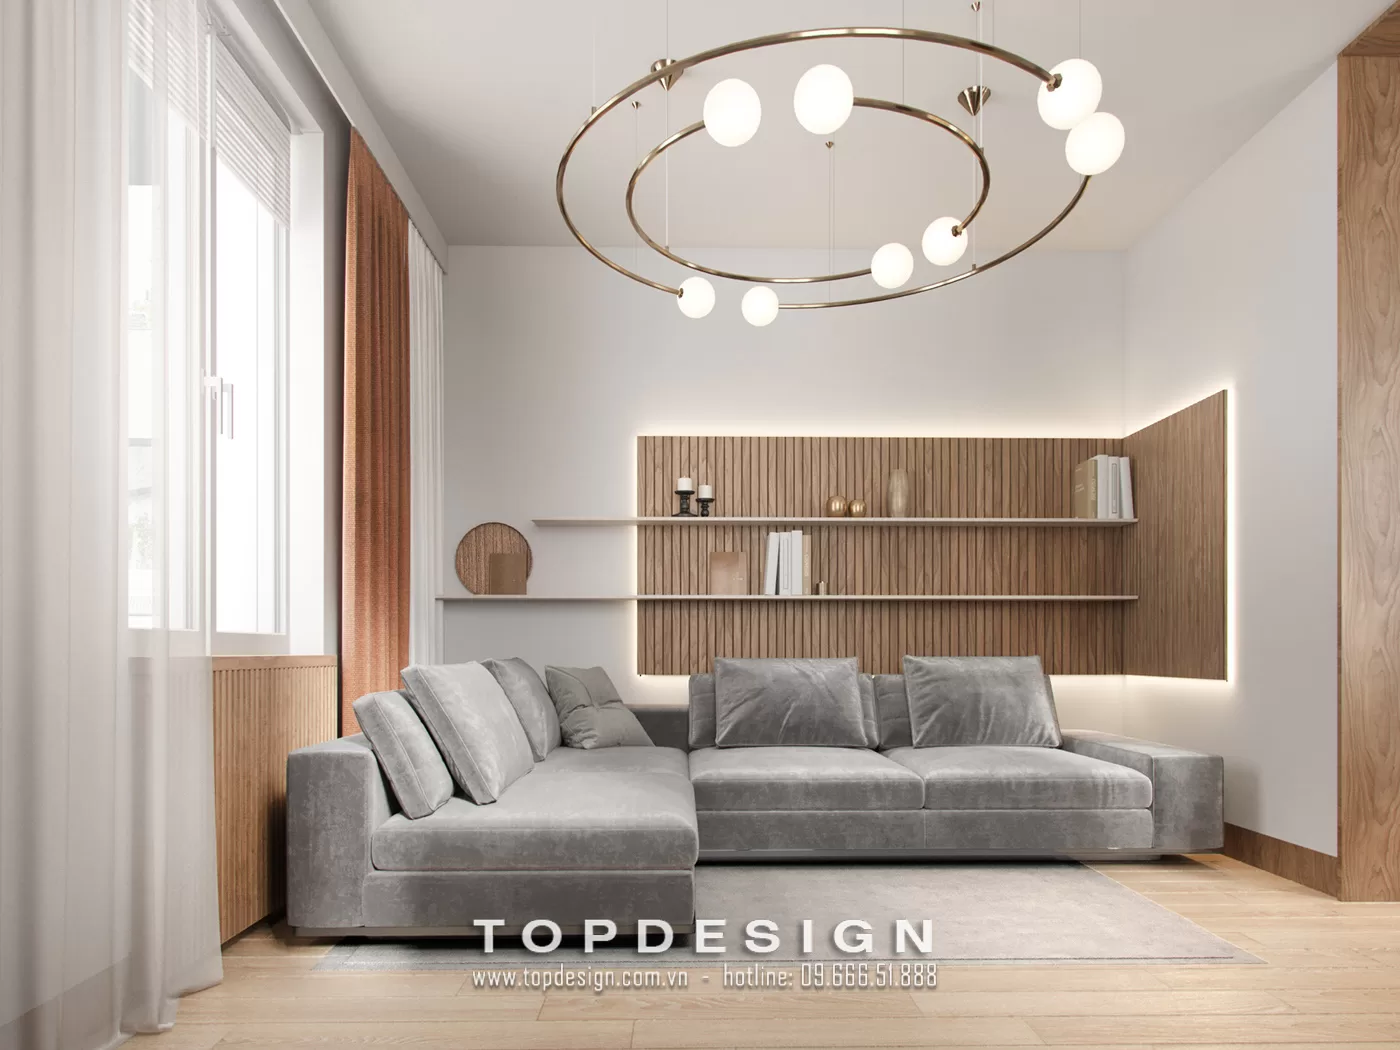 Tiêu chuẩn thiết kế nội thất - TOPDESIGN - 5